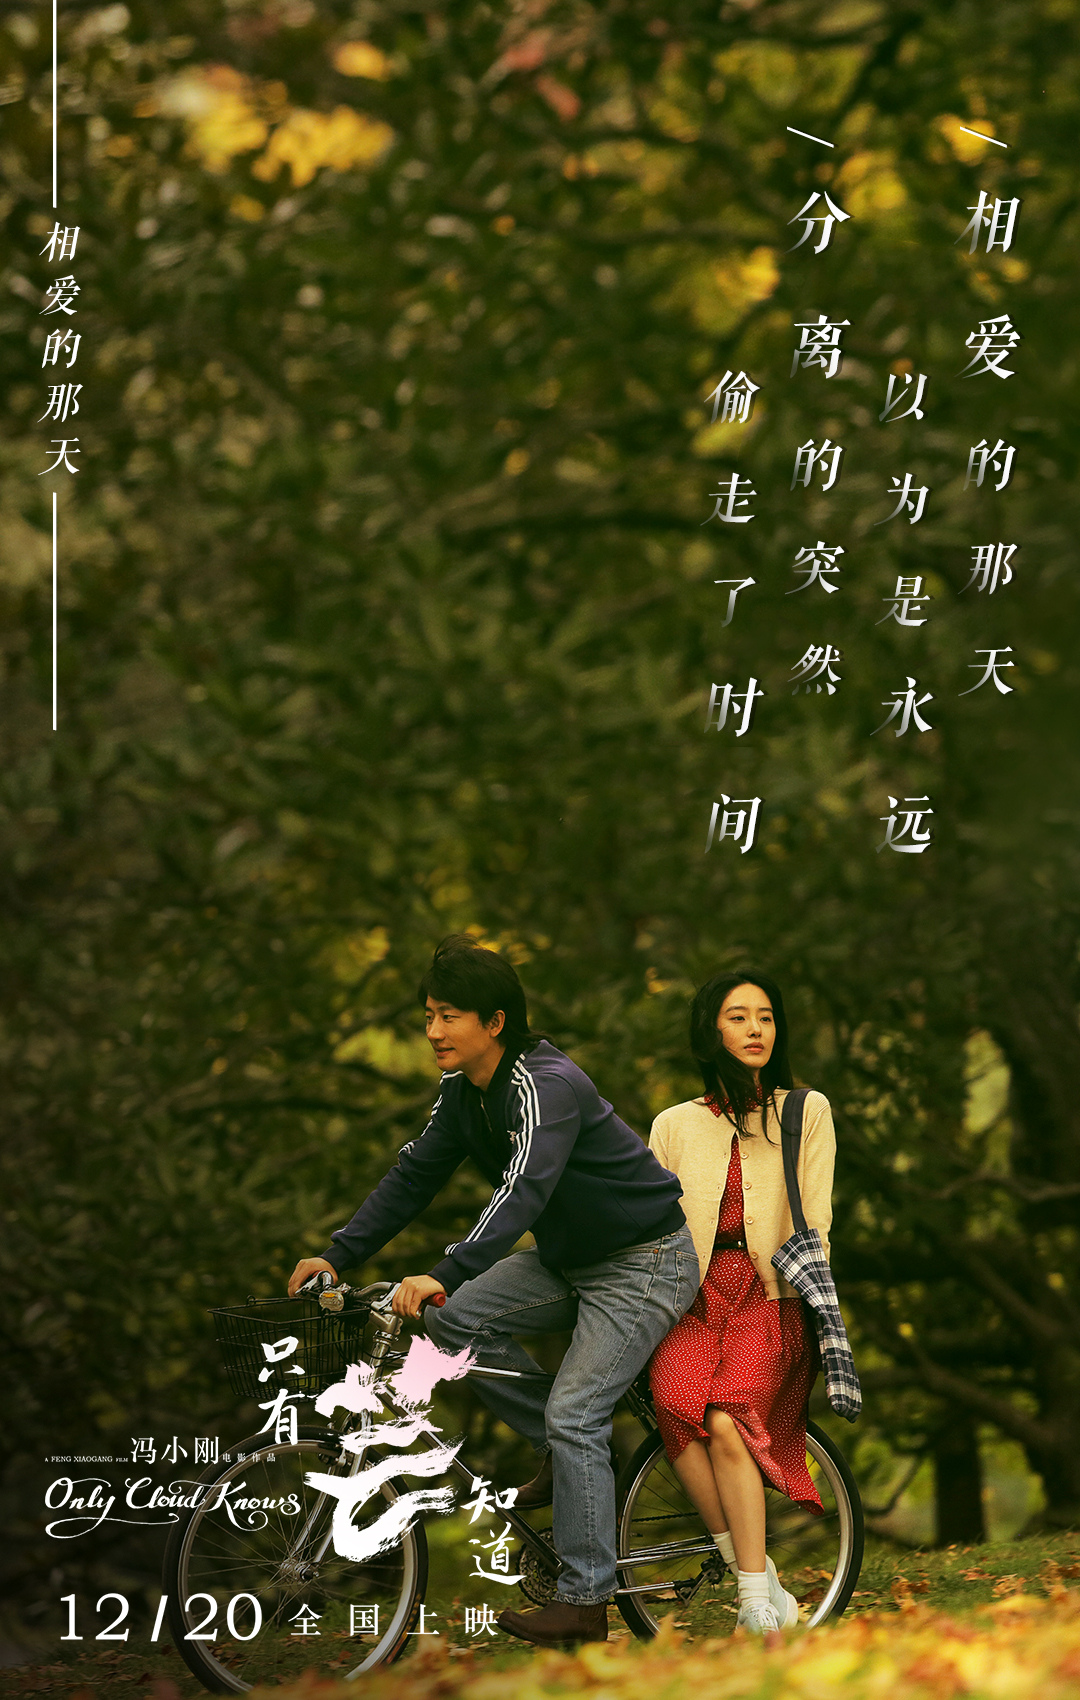 冯小刚新片《只有芸知道》:对爱情的珍重感,是每个时代的人都渴望的